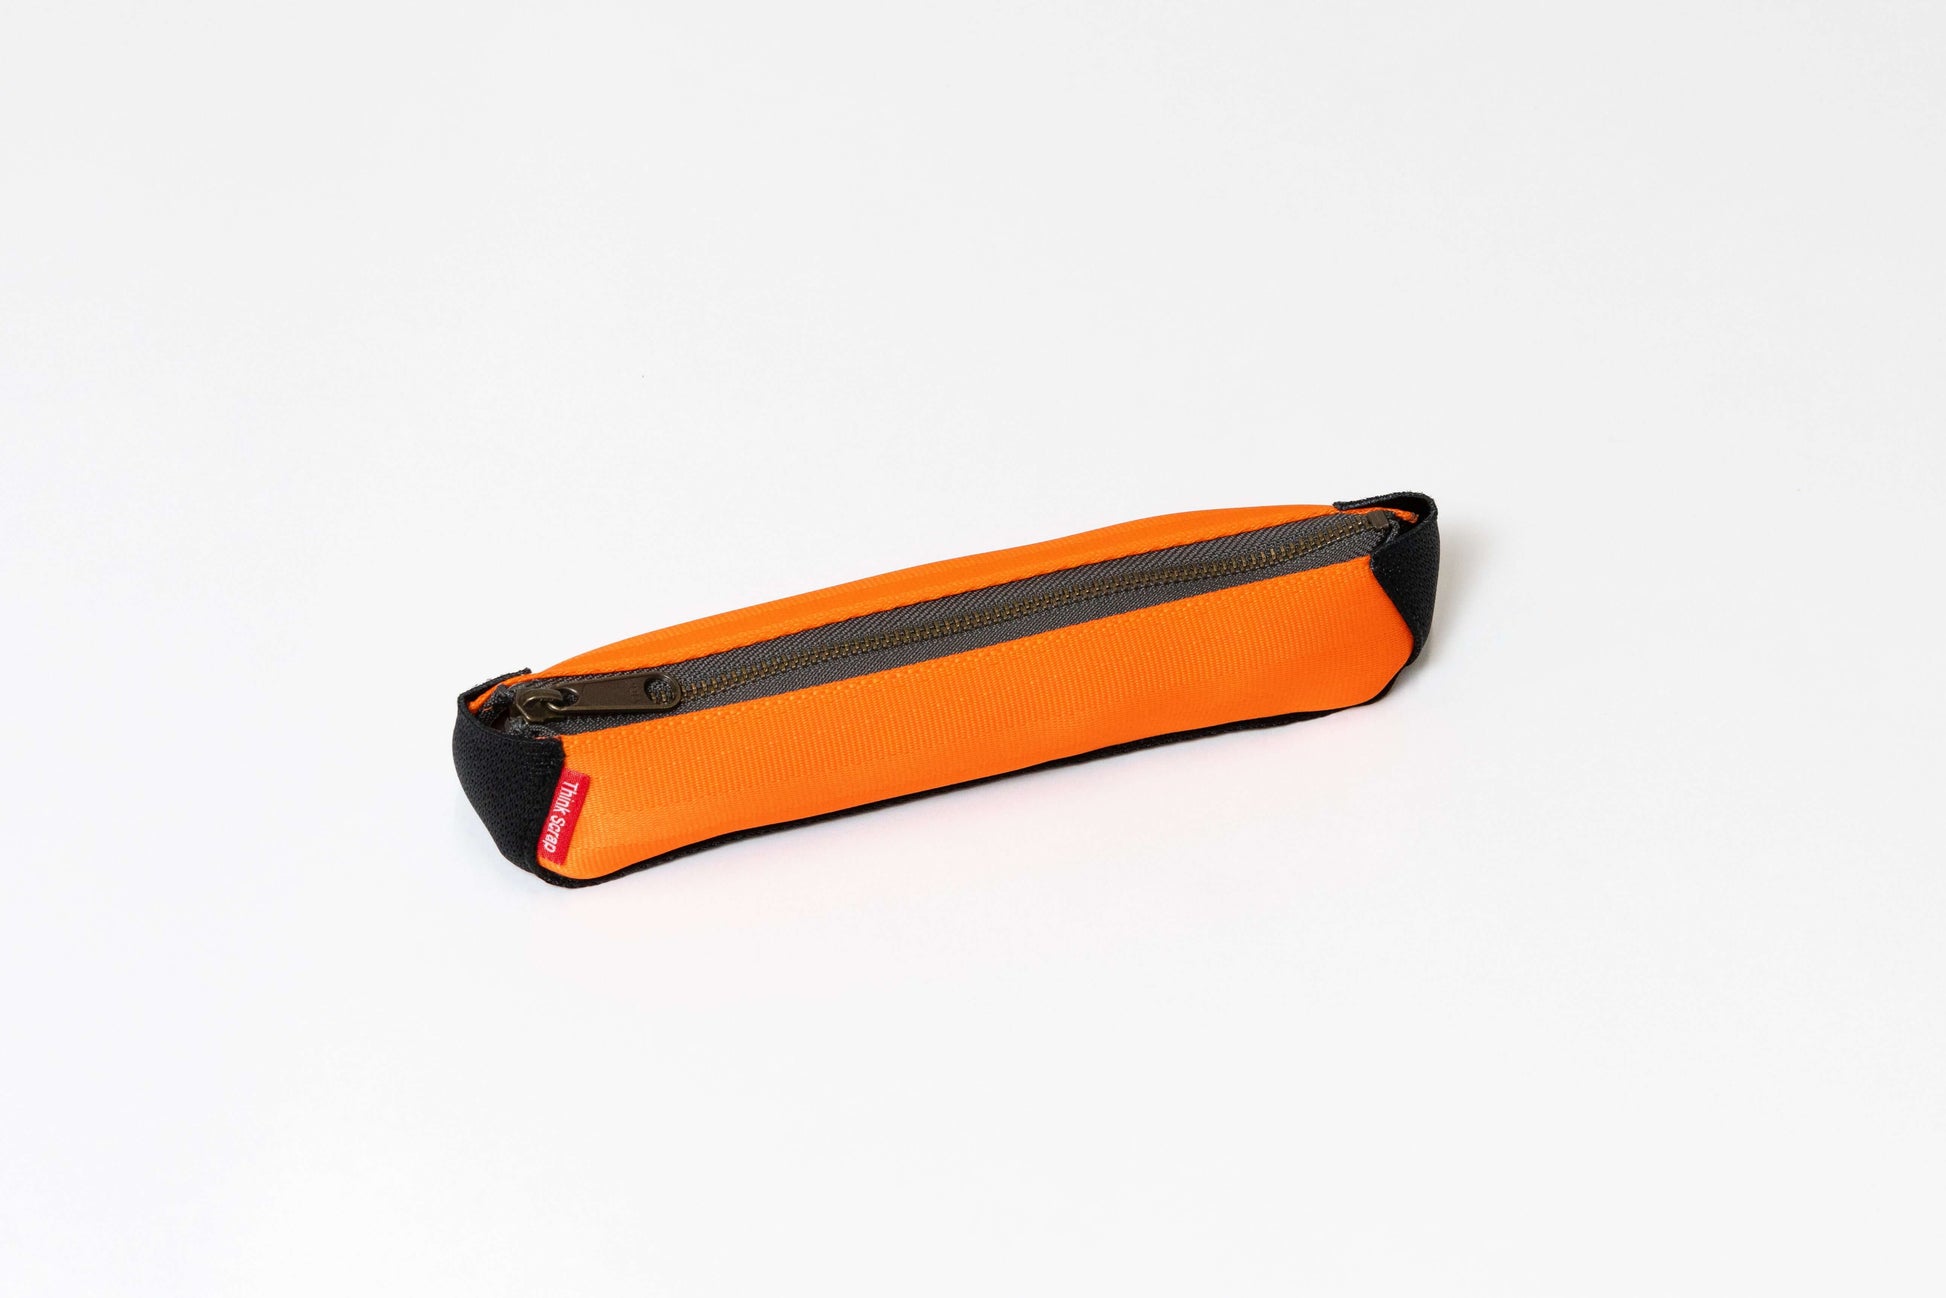 ペンケース 筆箱 筆記用具入れ 文房具 シートベルトペンケース シートベルト限定 端材アップサイクルペンケース 収納と取出しは楽ペンケース 見た目はスリムなペンケース オレンジ色ペンケース